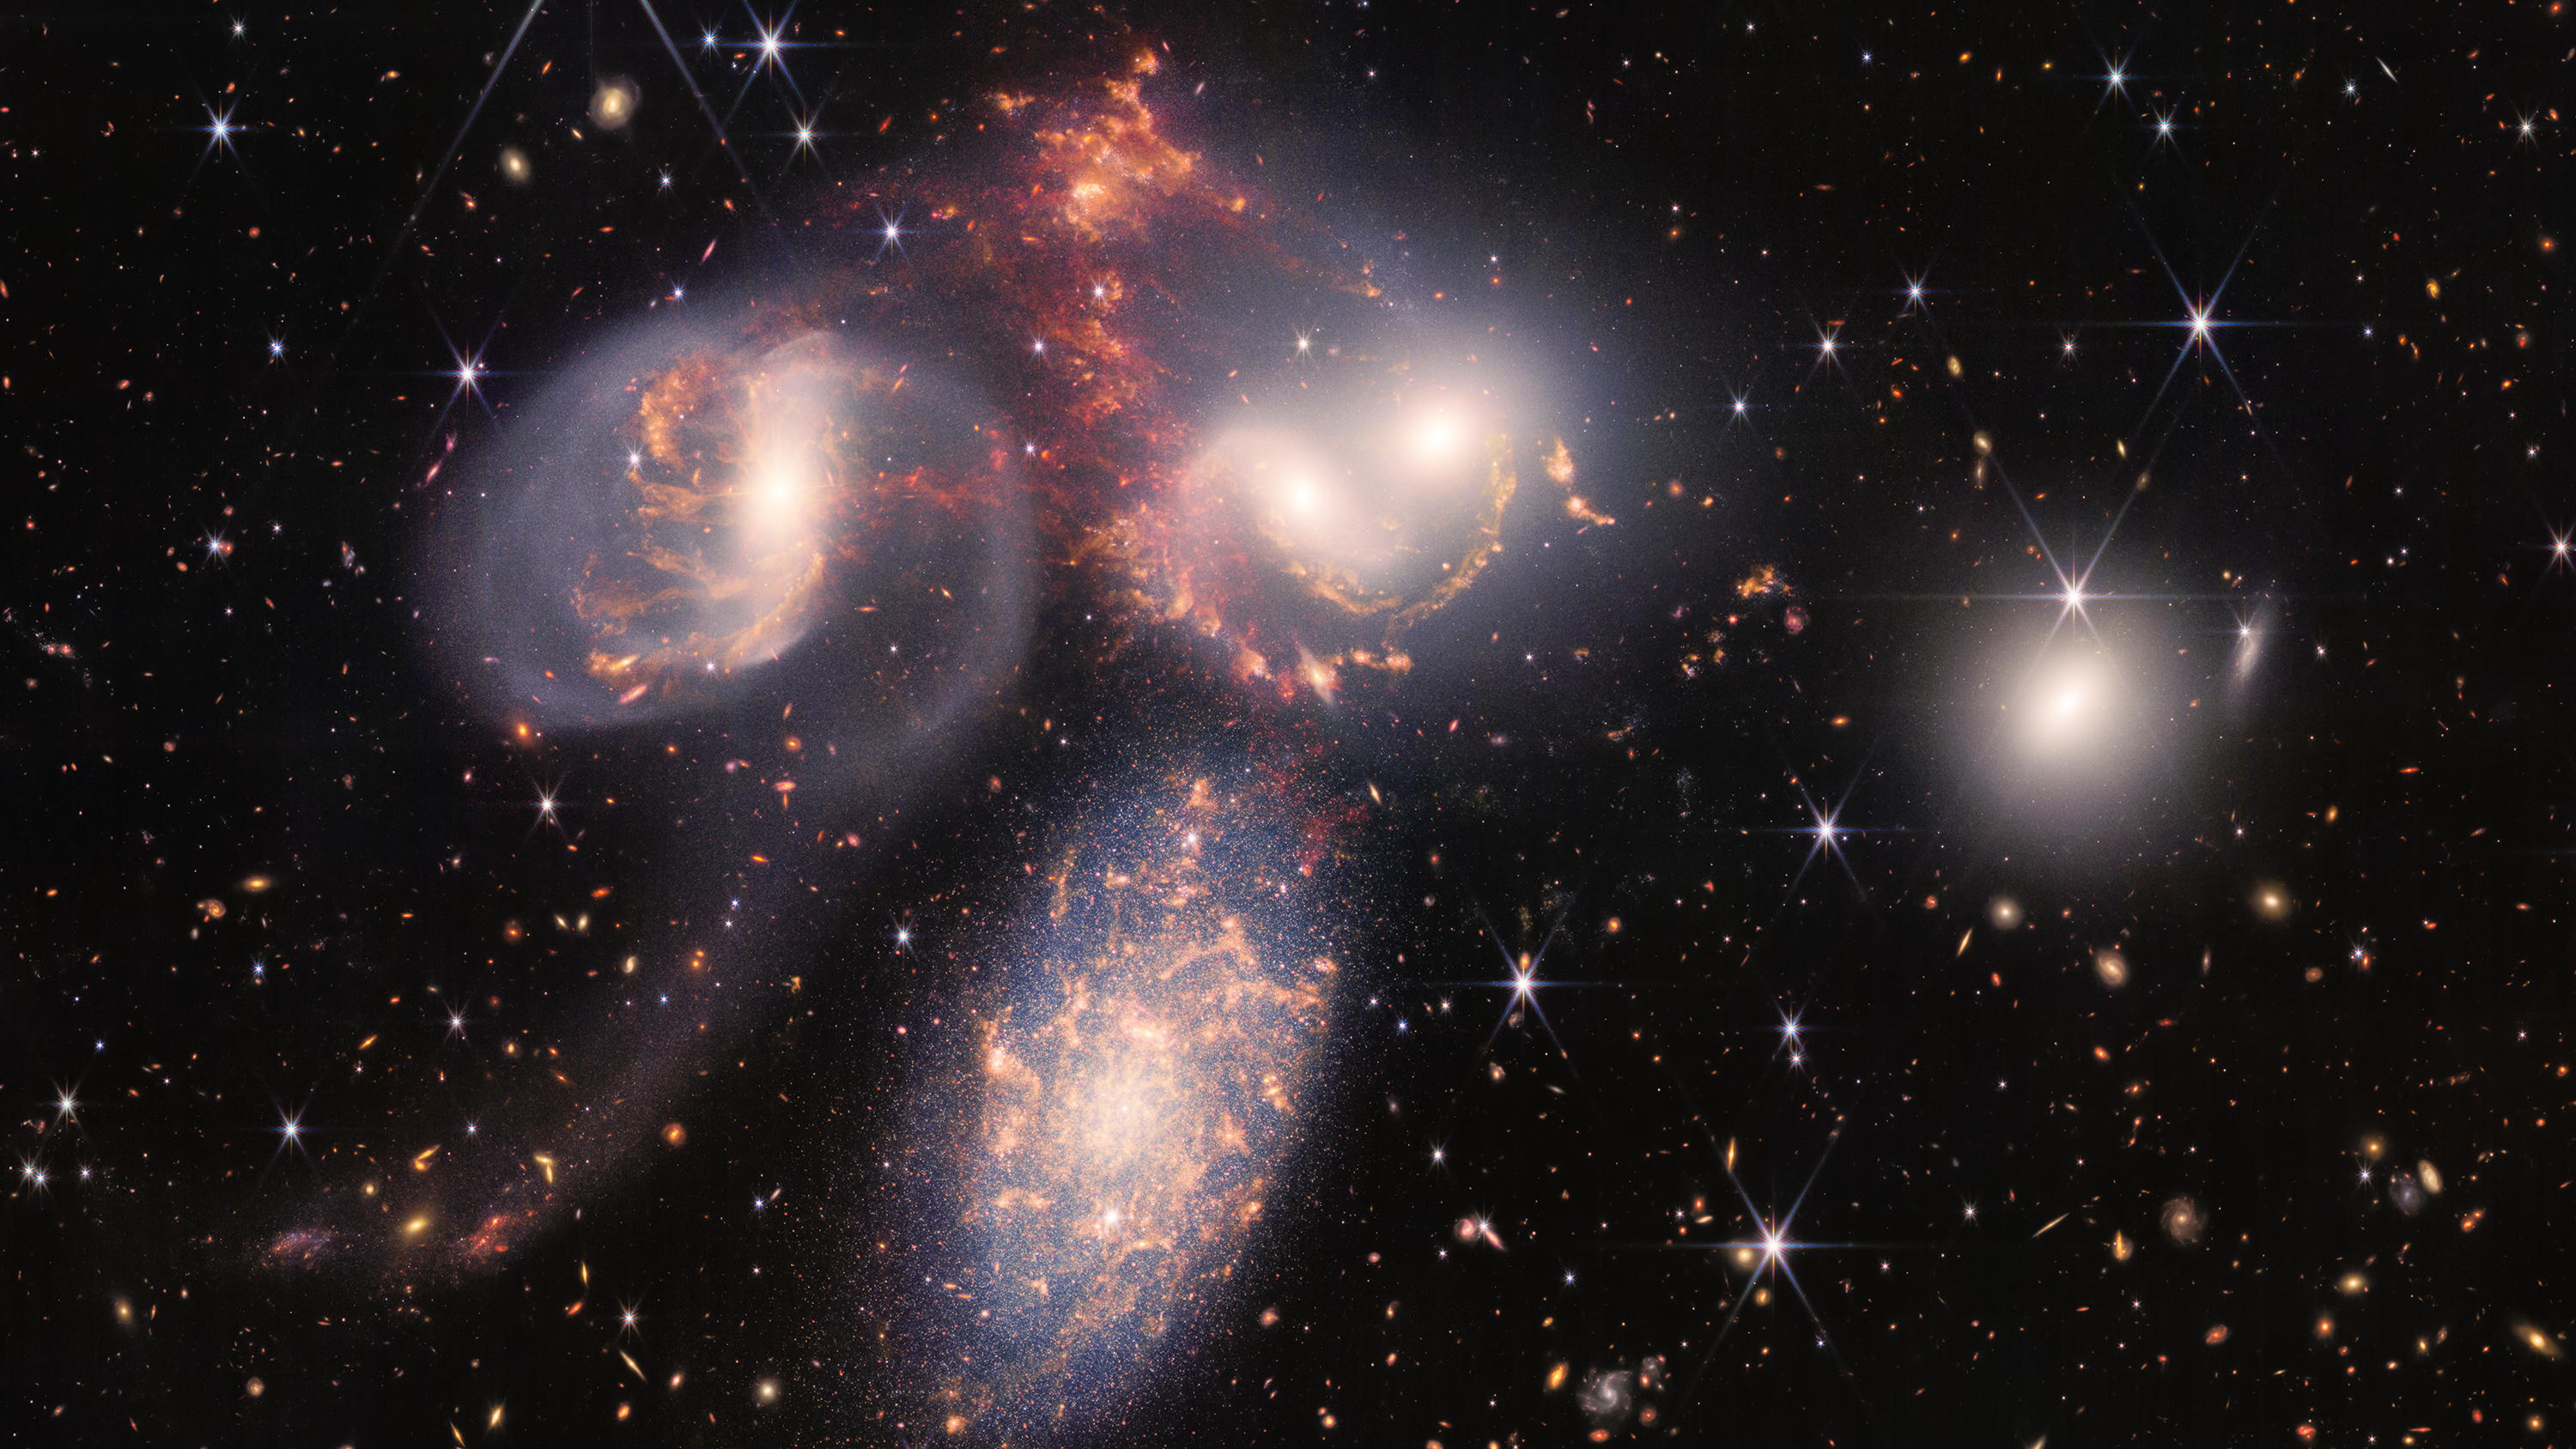 Stephan’s Quintet, Hickson Compact Group (HCG) 92, NGC 7318A, NGC 7318B, NGC 7319, NGC 7320